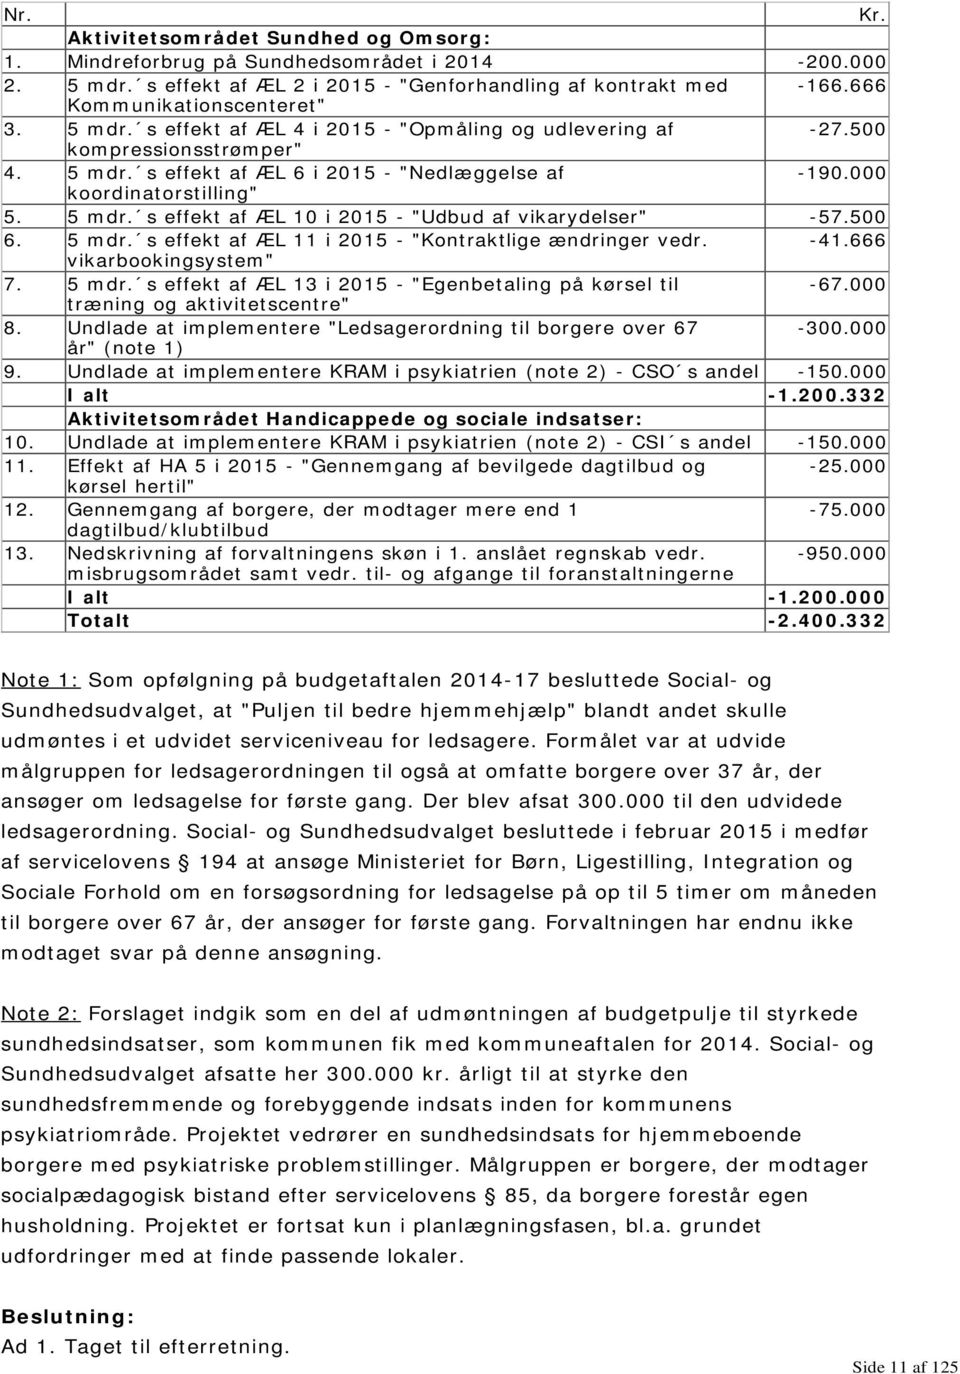 500 6. 5 mdr. s effekt af ÆL 11 i 2015 - "Kontraktlige ændringer vedr. -41.666 vikarbookingsystem" 7. 5 mdr. s effekt af ÆL 13 i 2015 - "Egenbetaling på kørsel til -67.